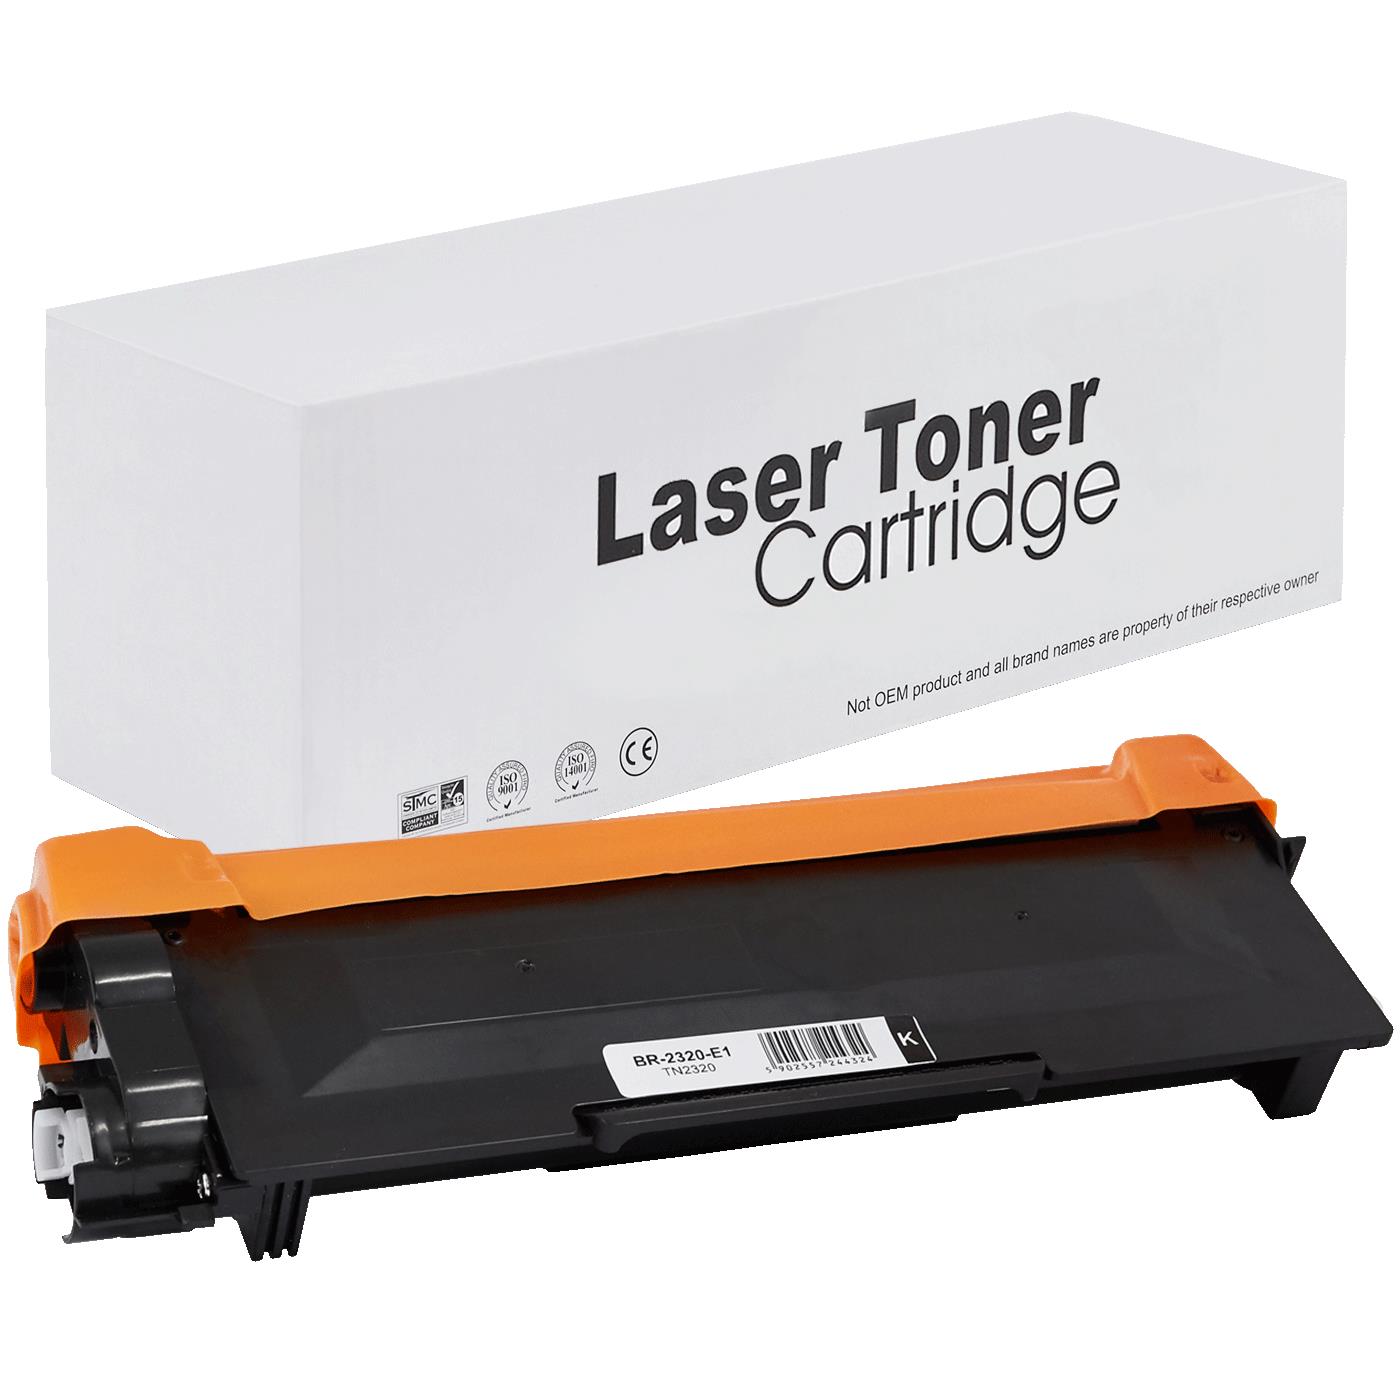 съвместима тонер касета за принтери и печатащи устройства на Brother  MFC-L 2700 DW Toner BR-2320 | TN2320 / TN2310 / TN-2320. Ниски цени, прецизно изпълнение, високо качество.